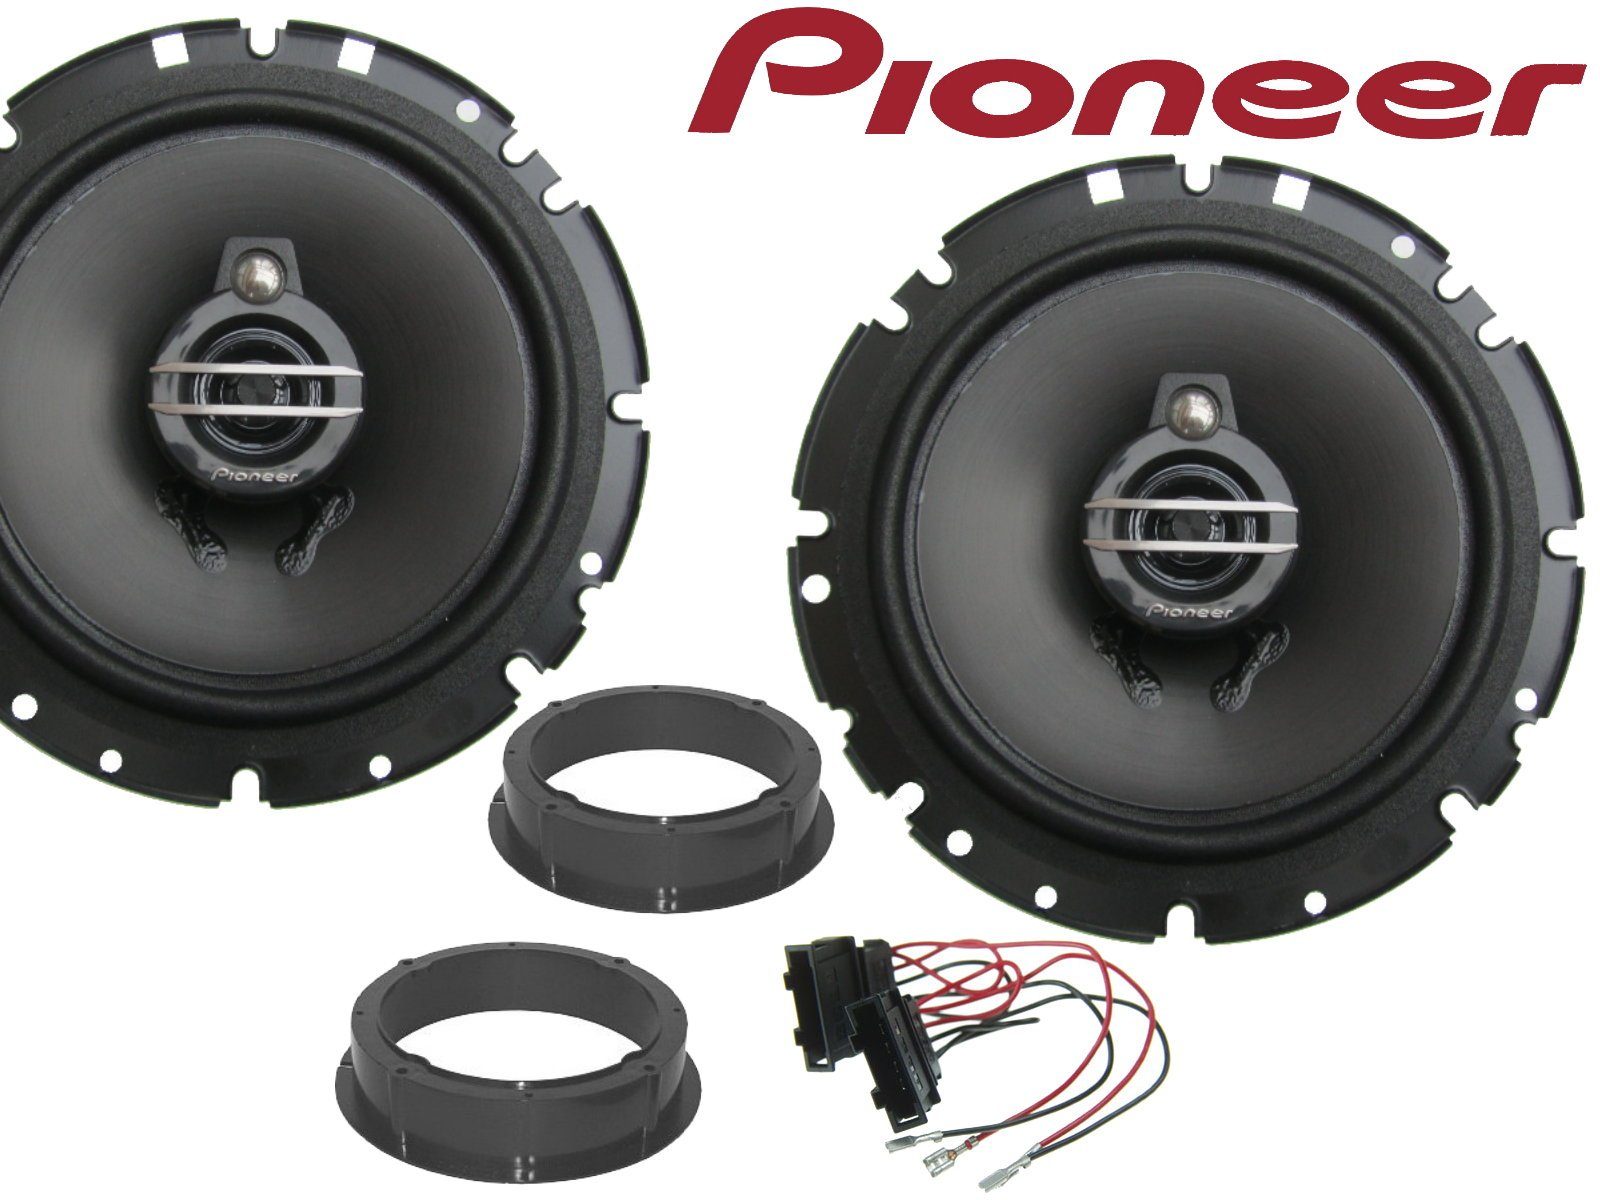 DSX Pioneer 3wege passend für Skoda Kodiaq 2017 bis 20 Auto-Lautsprecher (40 W)